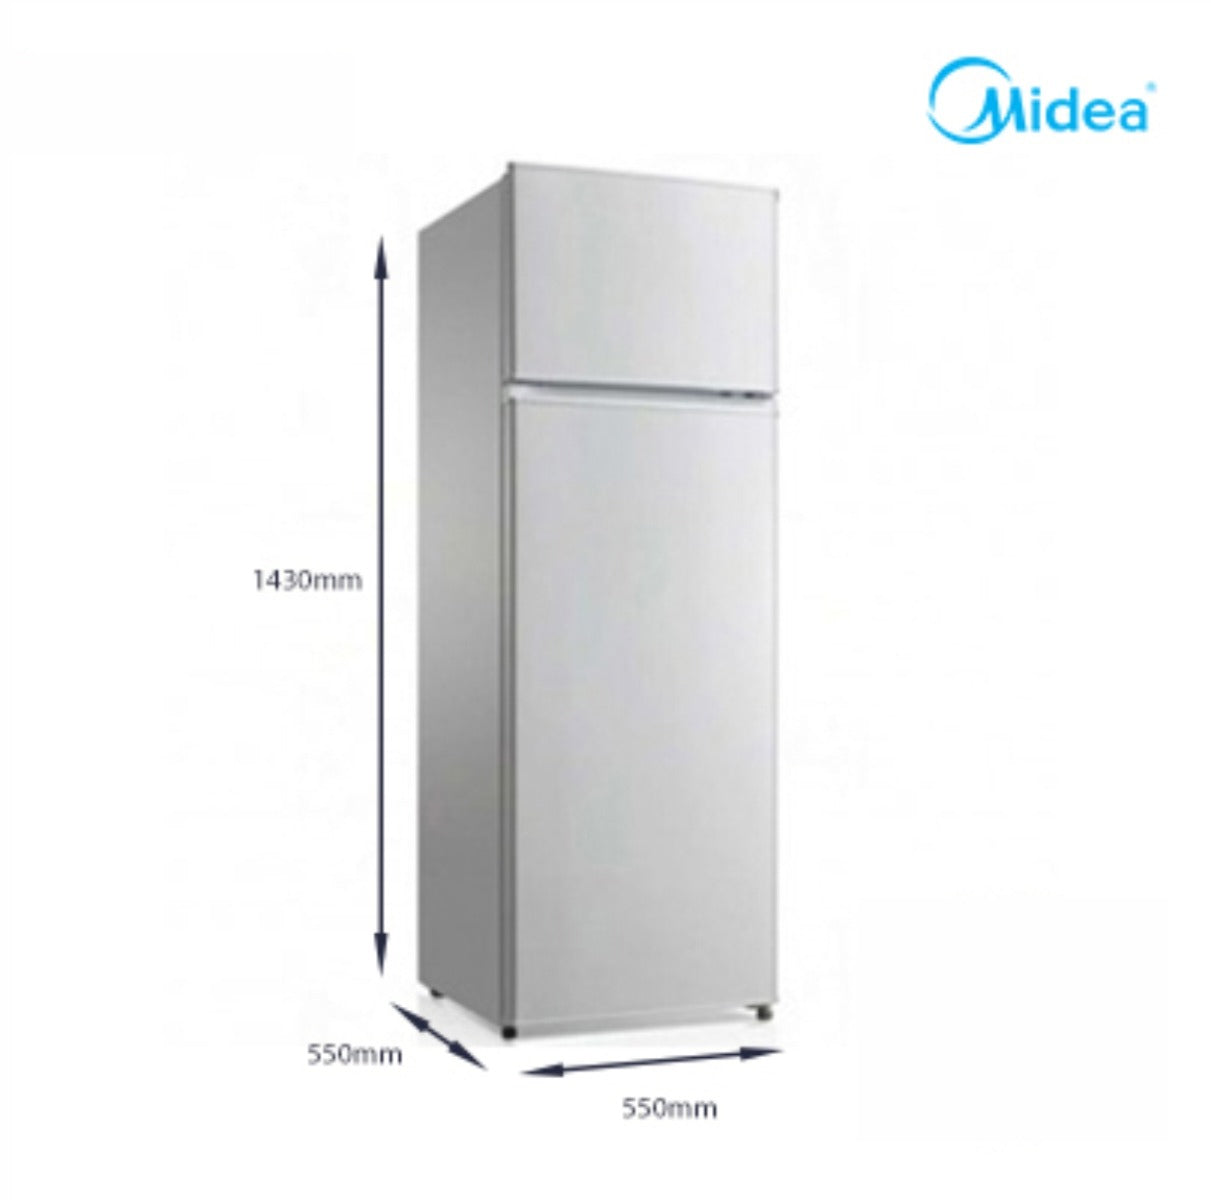 Midea HD 273F 207 litres Top Freezer Refrigerator